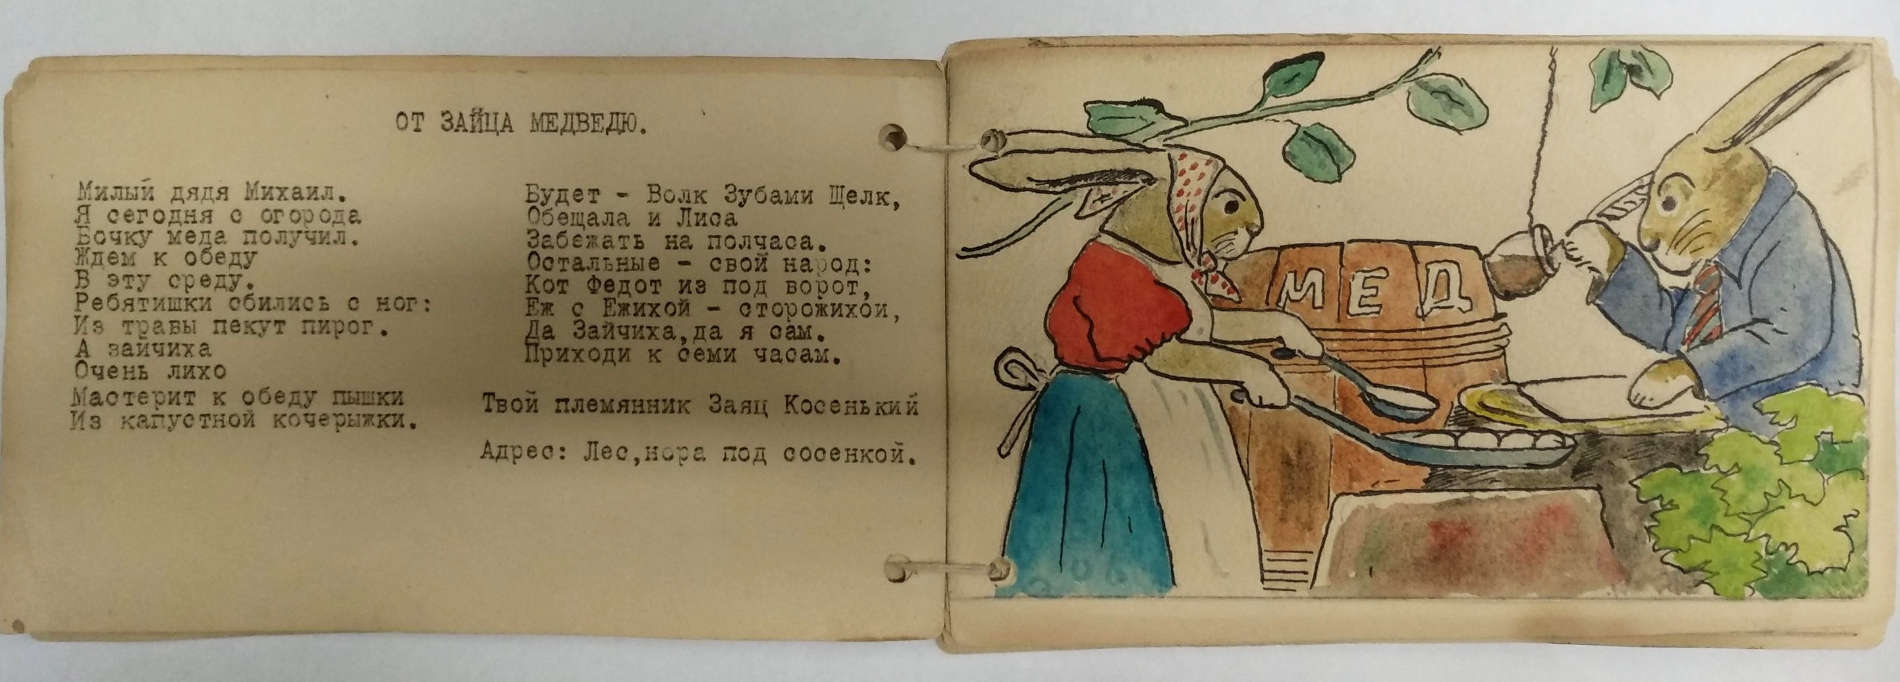 Самодельная детская книжка. Стихи Н.В. Крандиевской с рисунками. 1941-1943 гг.